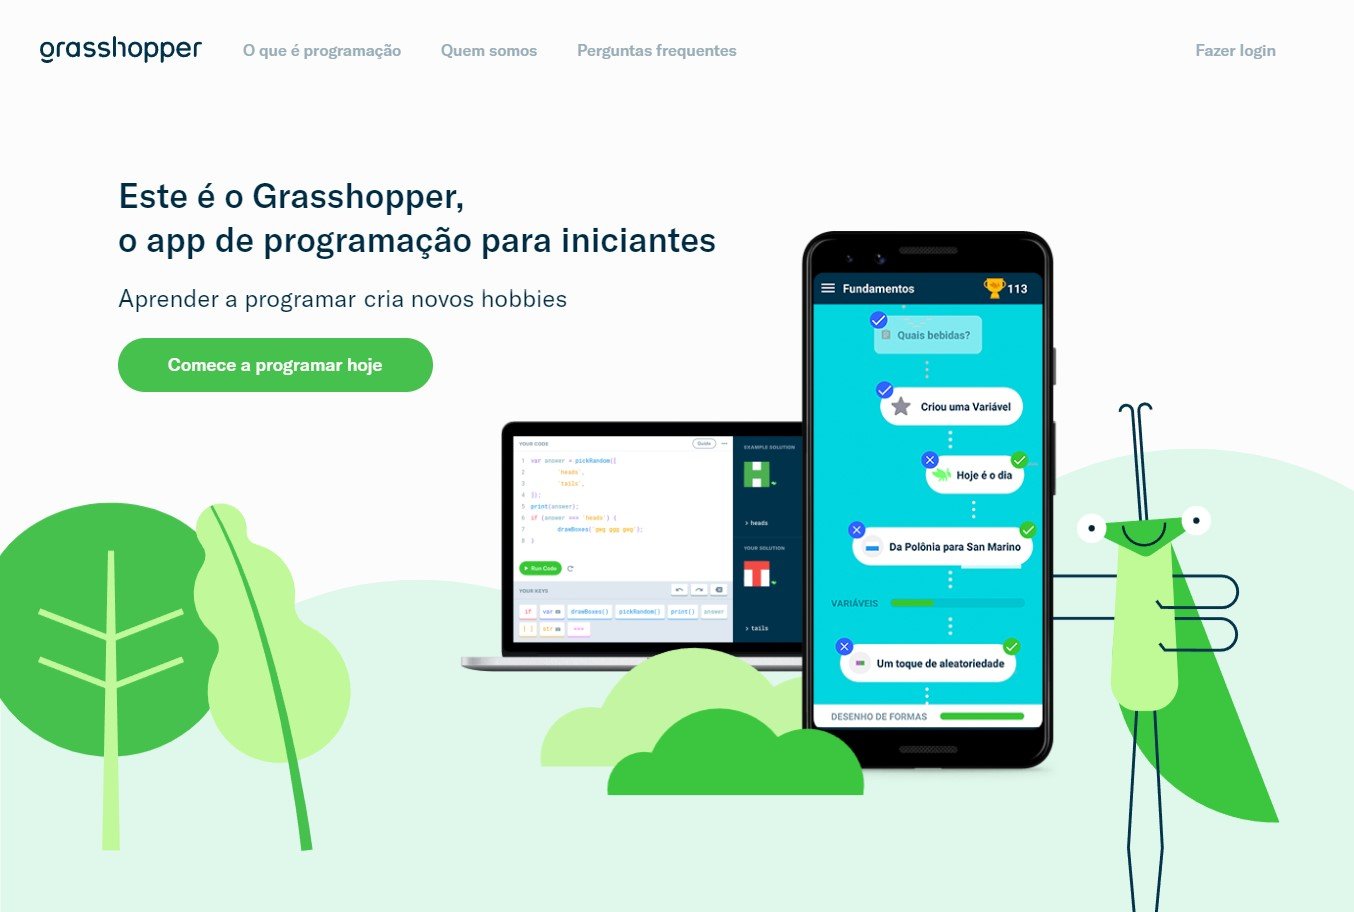 A Grasshopper é uma plataforma de ensino de programação criada pela própria Google